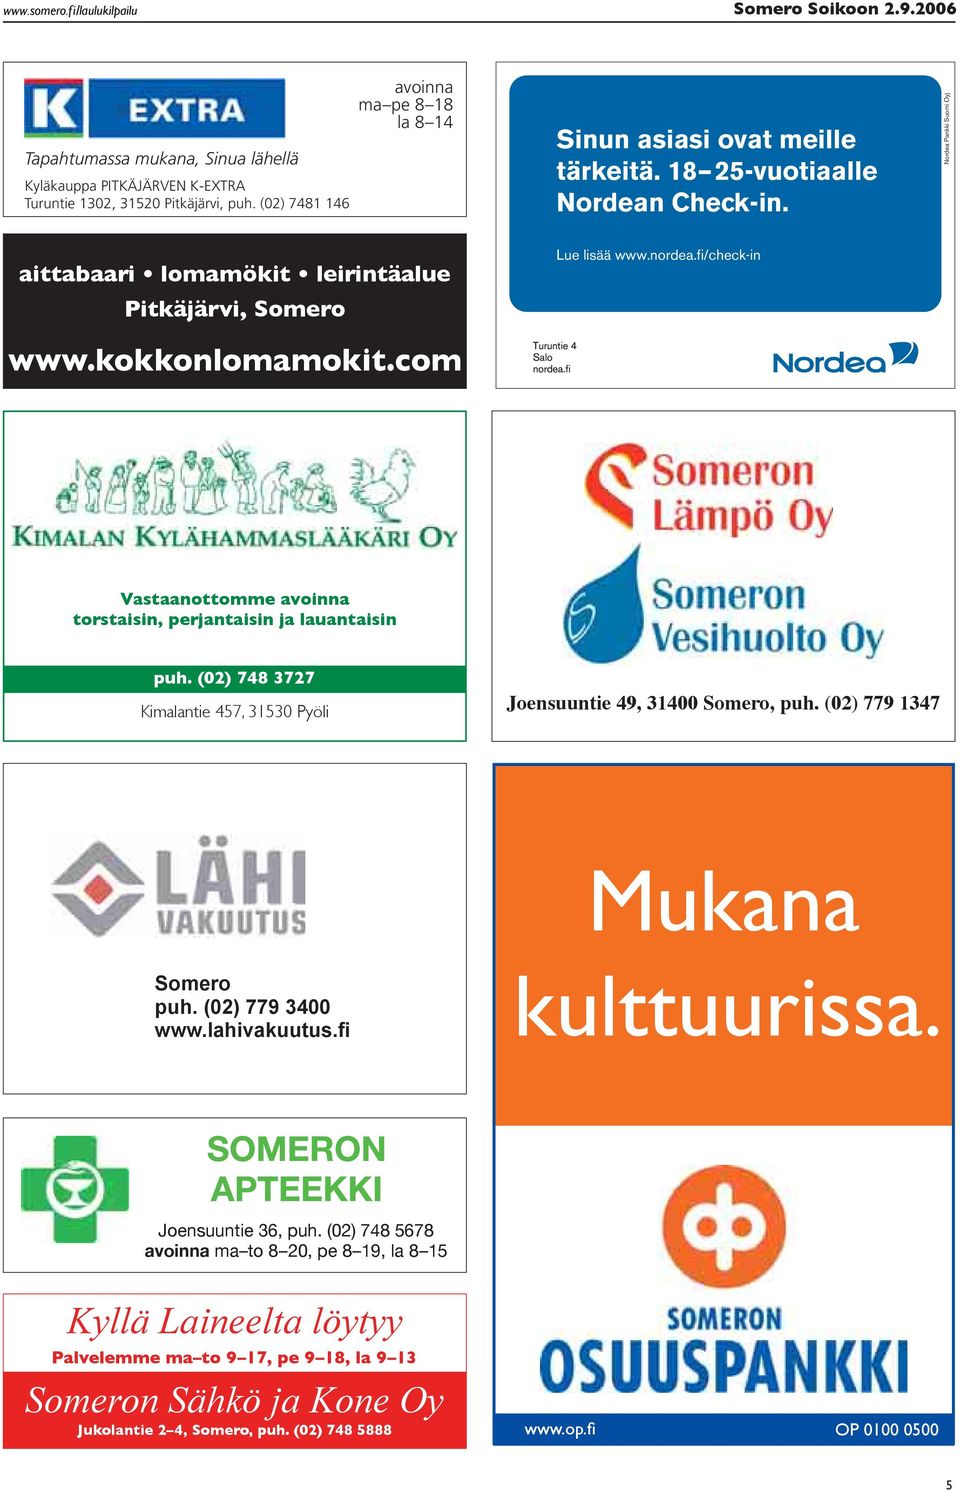 kokkonlomamokit.com Turuntie 4 Salo nordea.fi Lue lisää www.nordea.fi/check-in A Vastaanottomme avoinna torstaisin, perjantaisin ja lauantaisin puh.